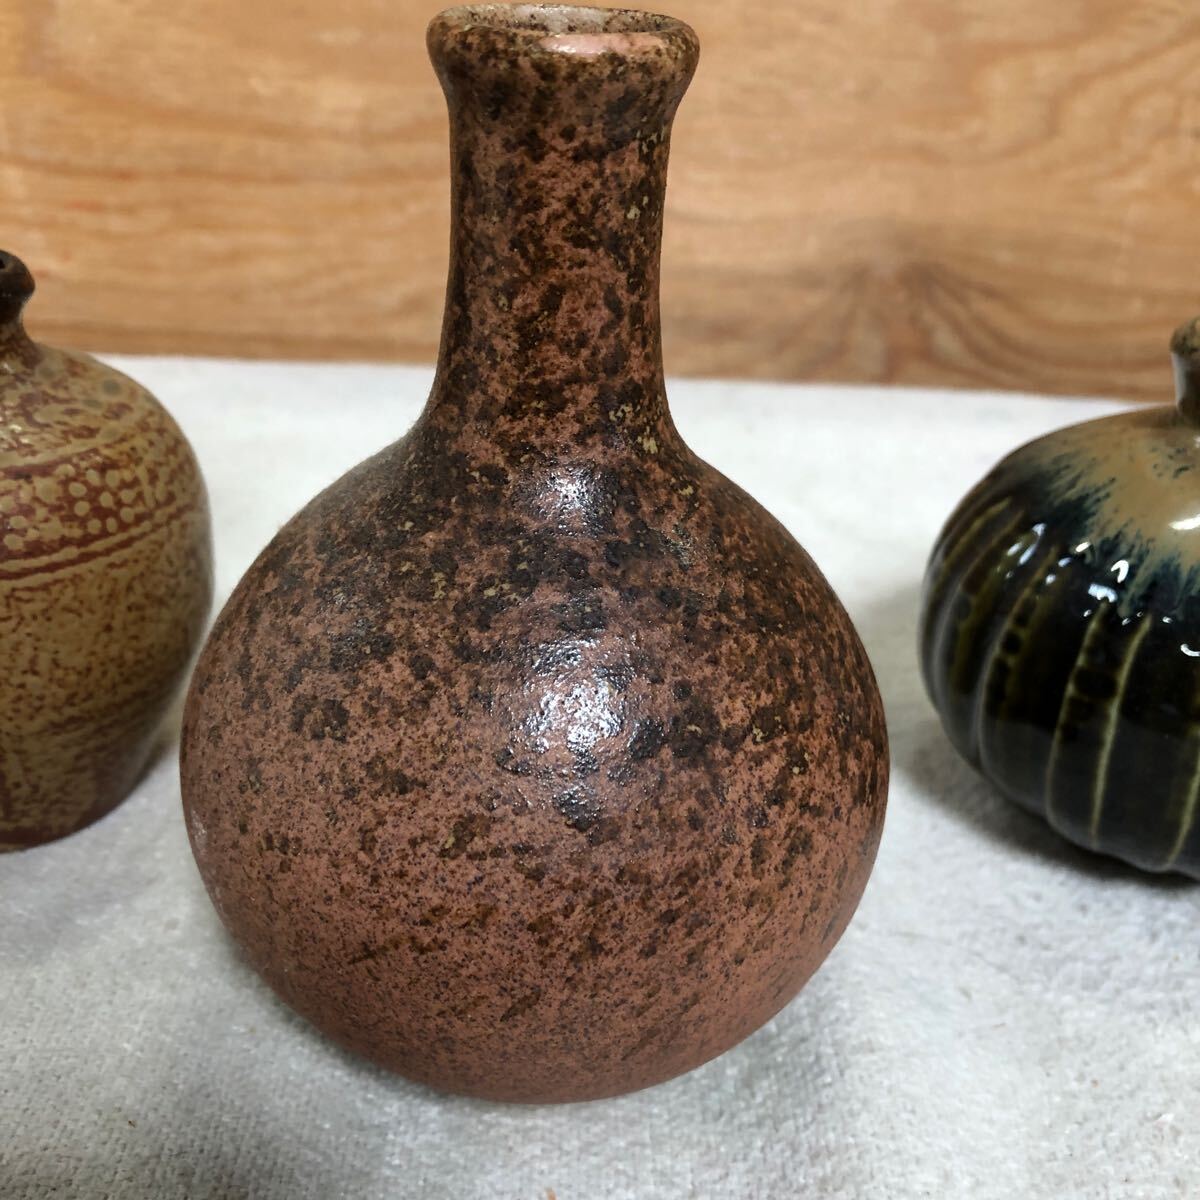  ваза ваза для цветов один колесо .. керамика Shigaraki Bizen . б/у меньше 4 пункт суммировать интерьер античный изделие прикладного искусства 